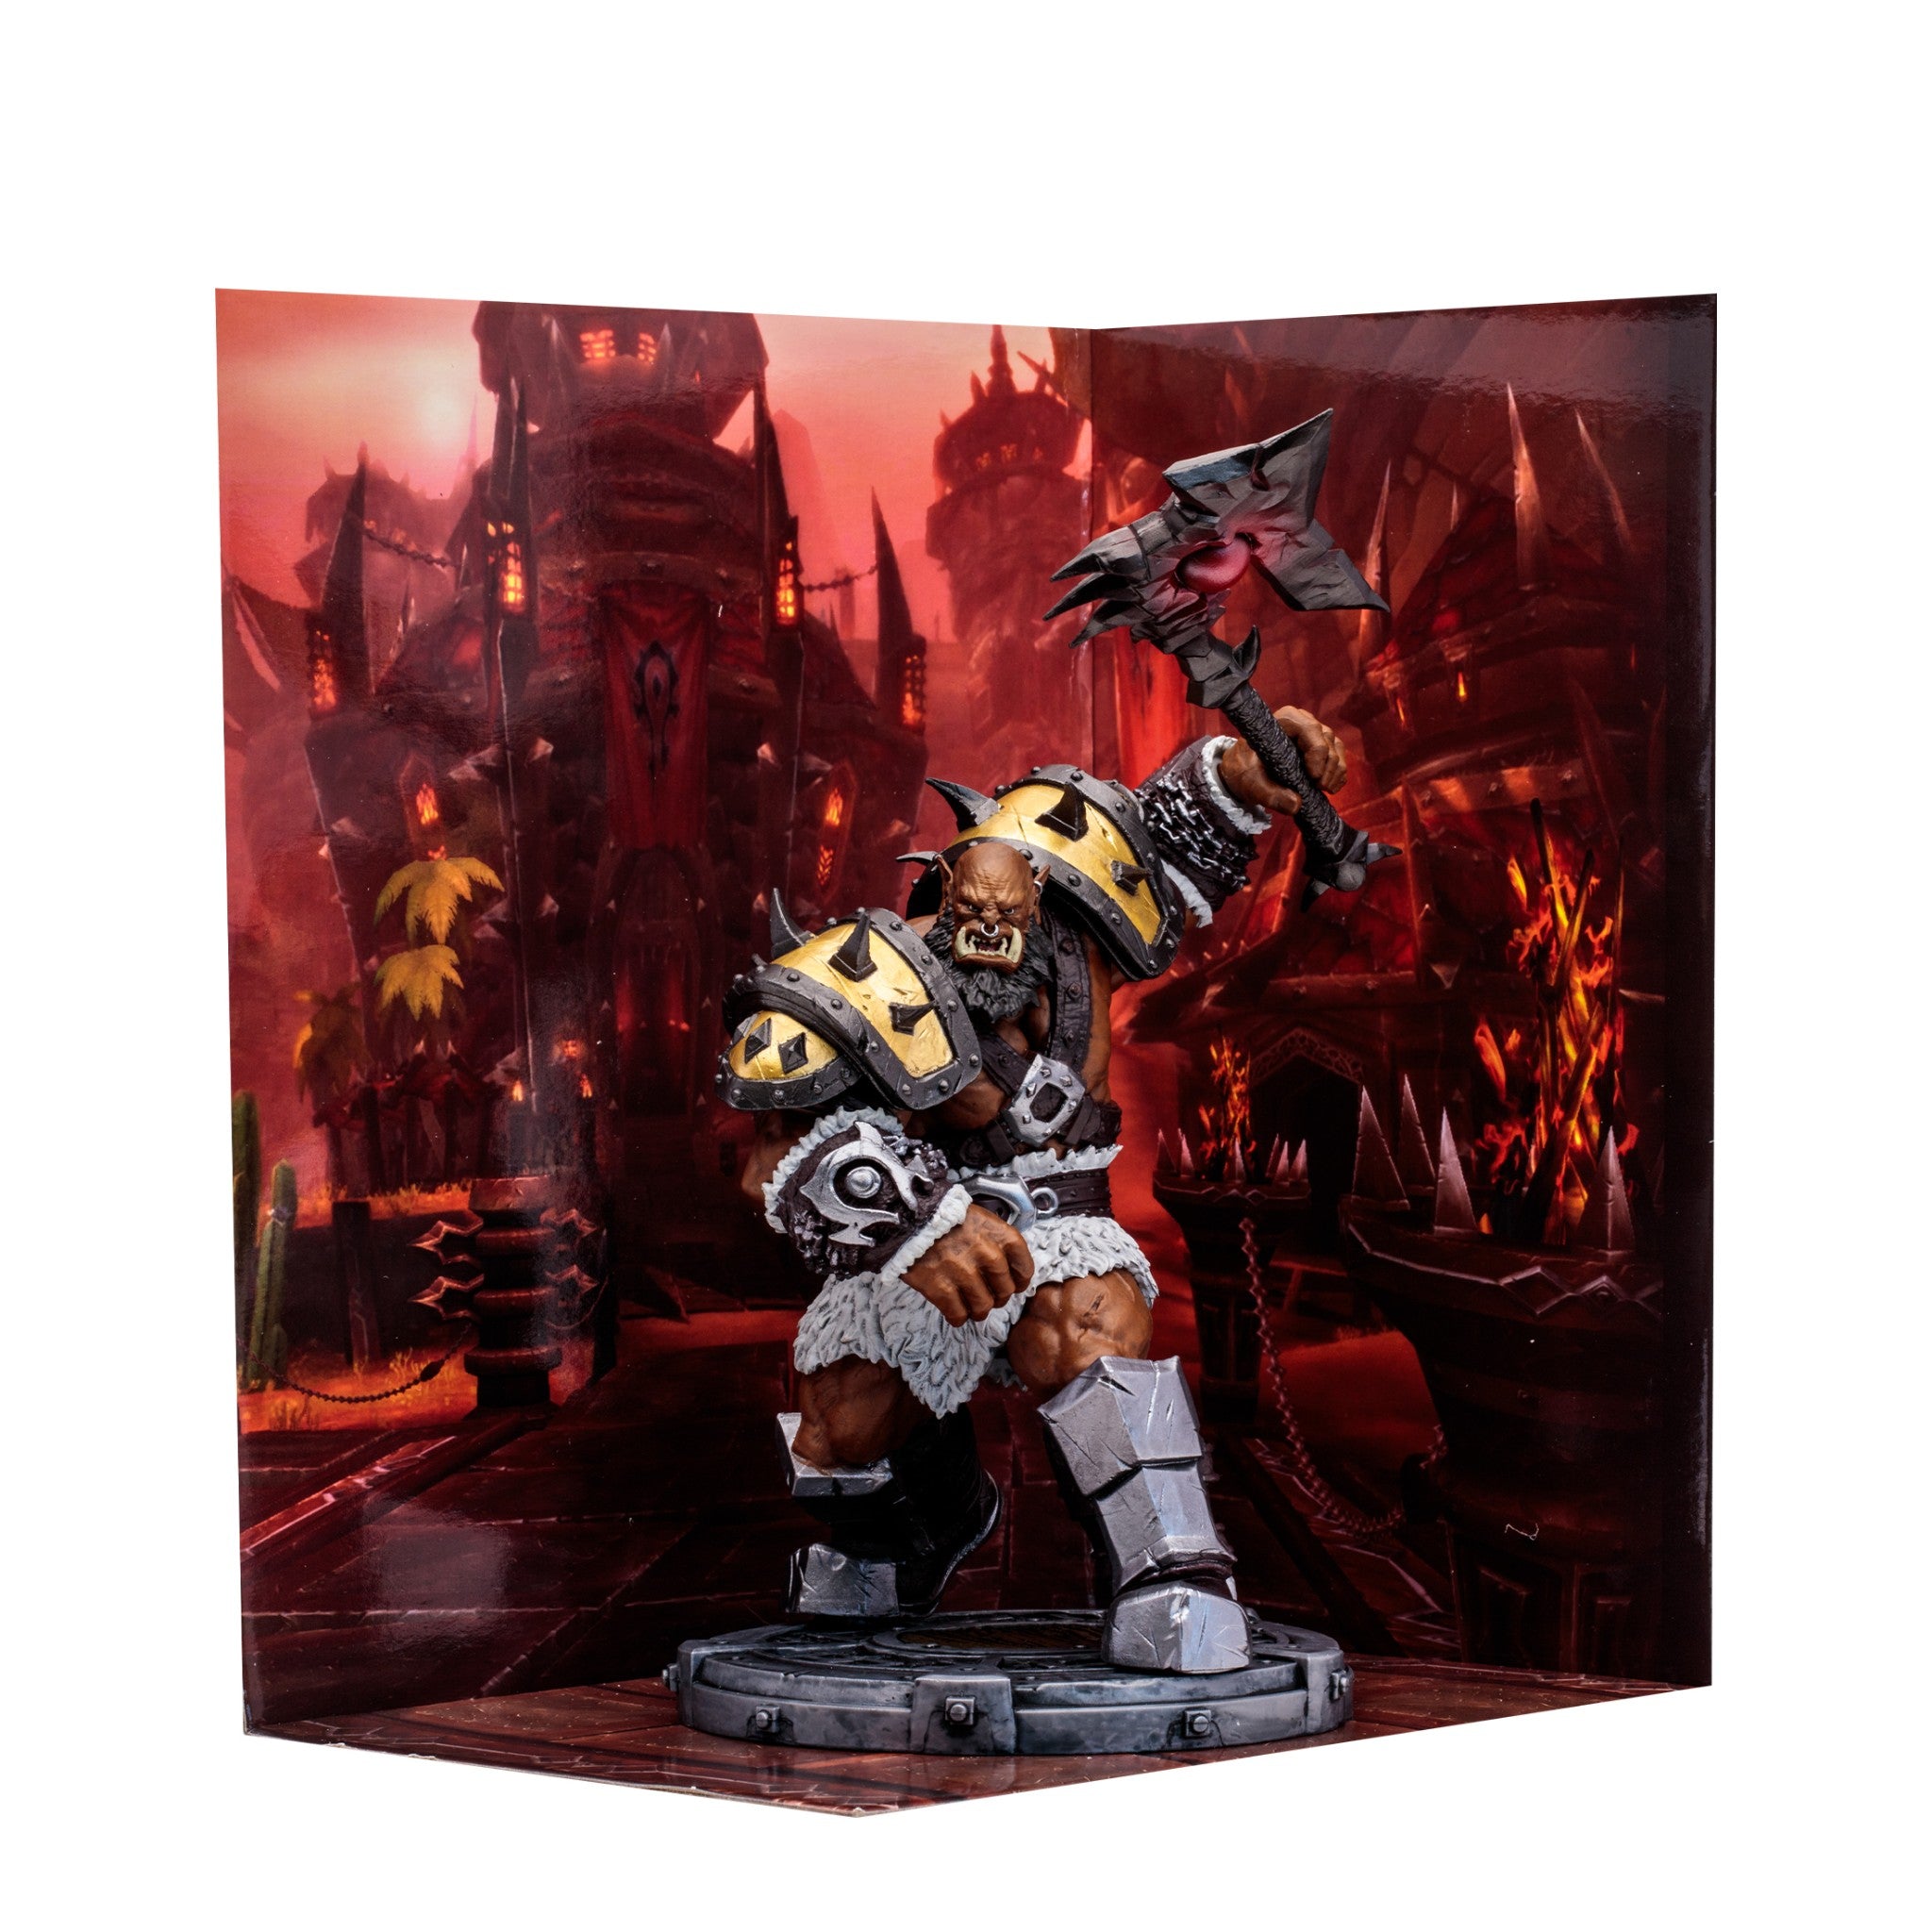 World of Warcraft Orc Warrior Shaman 7" Epic Figure - McFarlane Toys